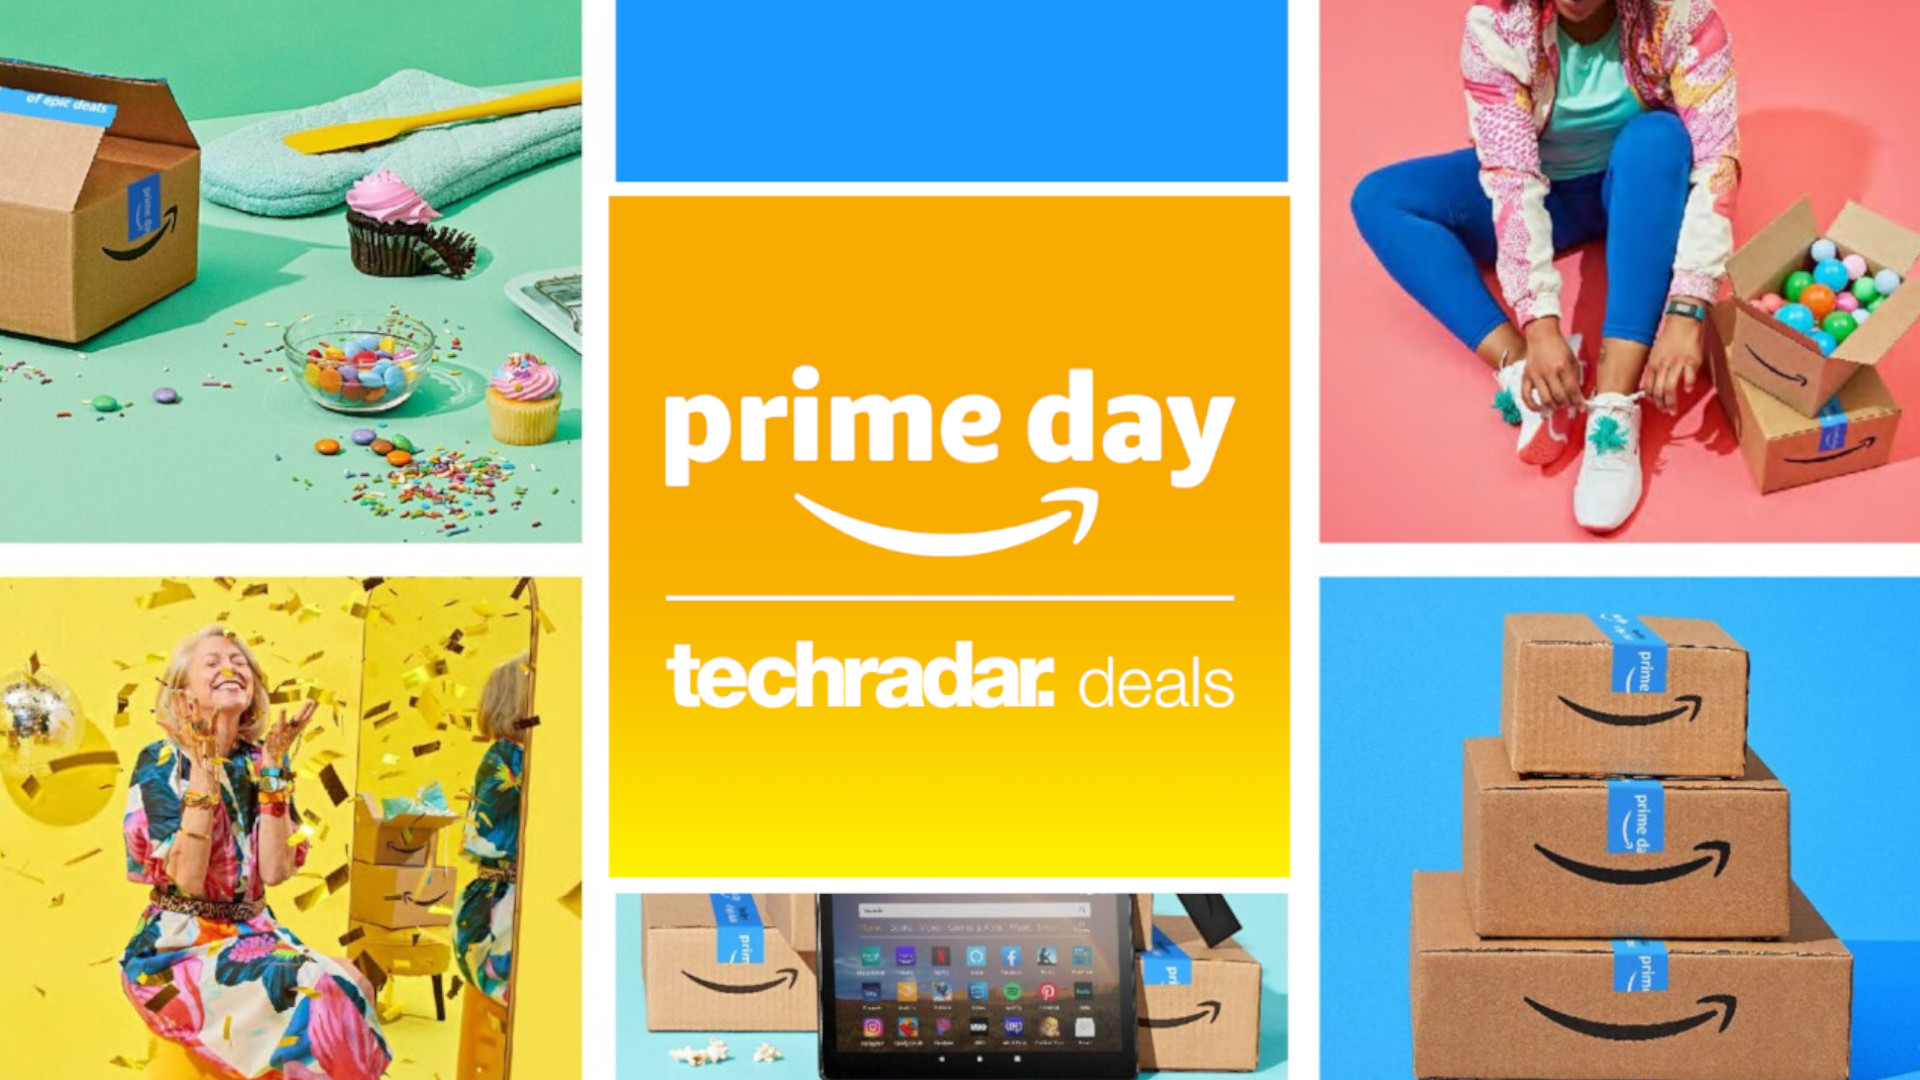 Изображение баннера Amazon Prime Day с наложенным логотипом TechRadar